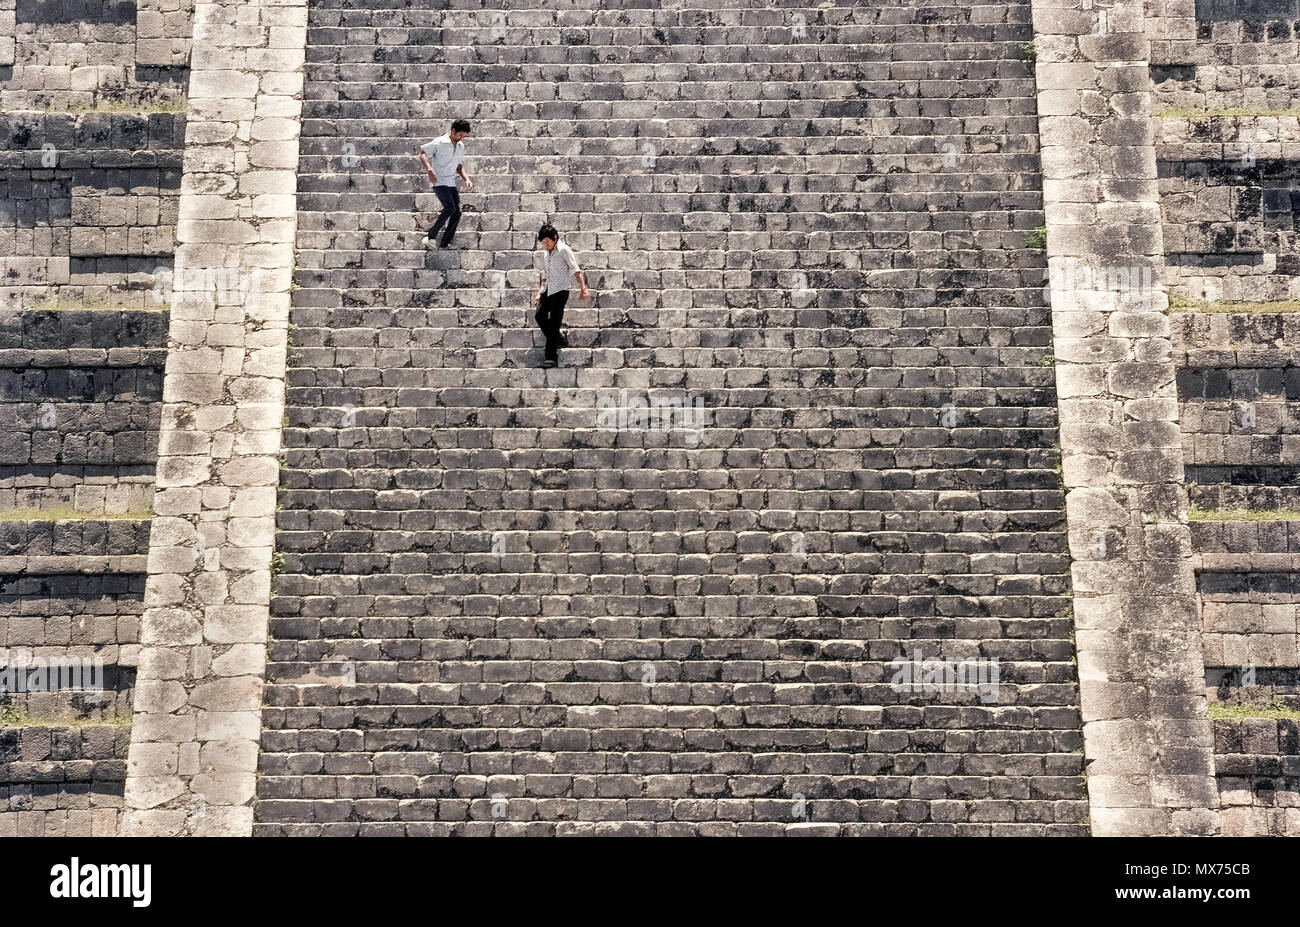 Zwei junge Männer im Zickzack steil nach unten 91 Kalkstein Schritte nach dem Aufstieg auf den Gipfel des El Castillo (das Schloss), auch als der Tempel des Kukulcan, der berühmteste Maya in den antiken Ausgrabungsstätten von Chichen Itza auf der Halbinsel Yucatan in Mexiko Ruine bekannt. Die schmalen Treppen waren in einem Winkel von 45 Grad auf allen vier Seiten dieses pyramidenförmige Struktur aufgebaut. Seit ein Bergsteiger bis zu ihrem Tod im Jahr 2006 fiel, Besucher sind nicht mehr erlaubt, die 99 Fuß - hohe (30-meter) Denkmal, das im 12. Jahrhundert gebaut wurde, um aufzusteigen. Diese präkolumbianischen Sehenswürdigkeit ist ein UNESCO-Weltkulturerbe. Stockfoto